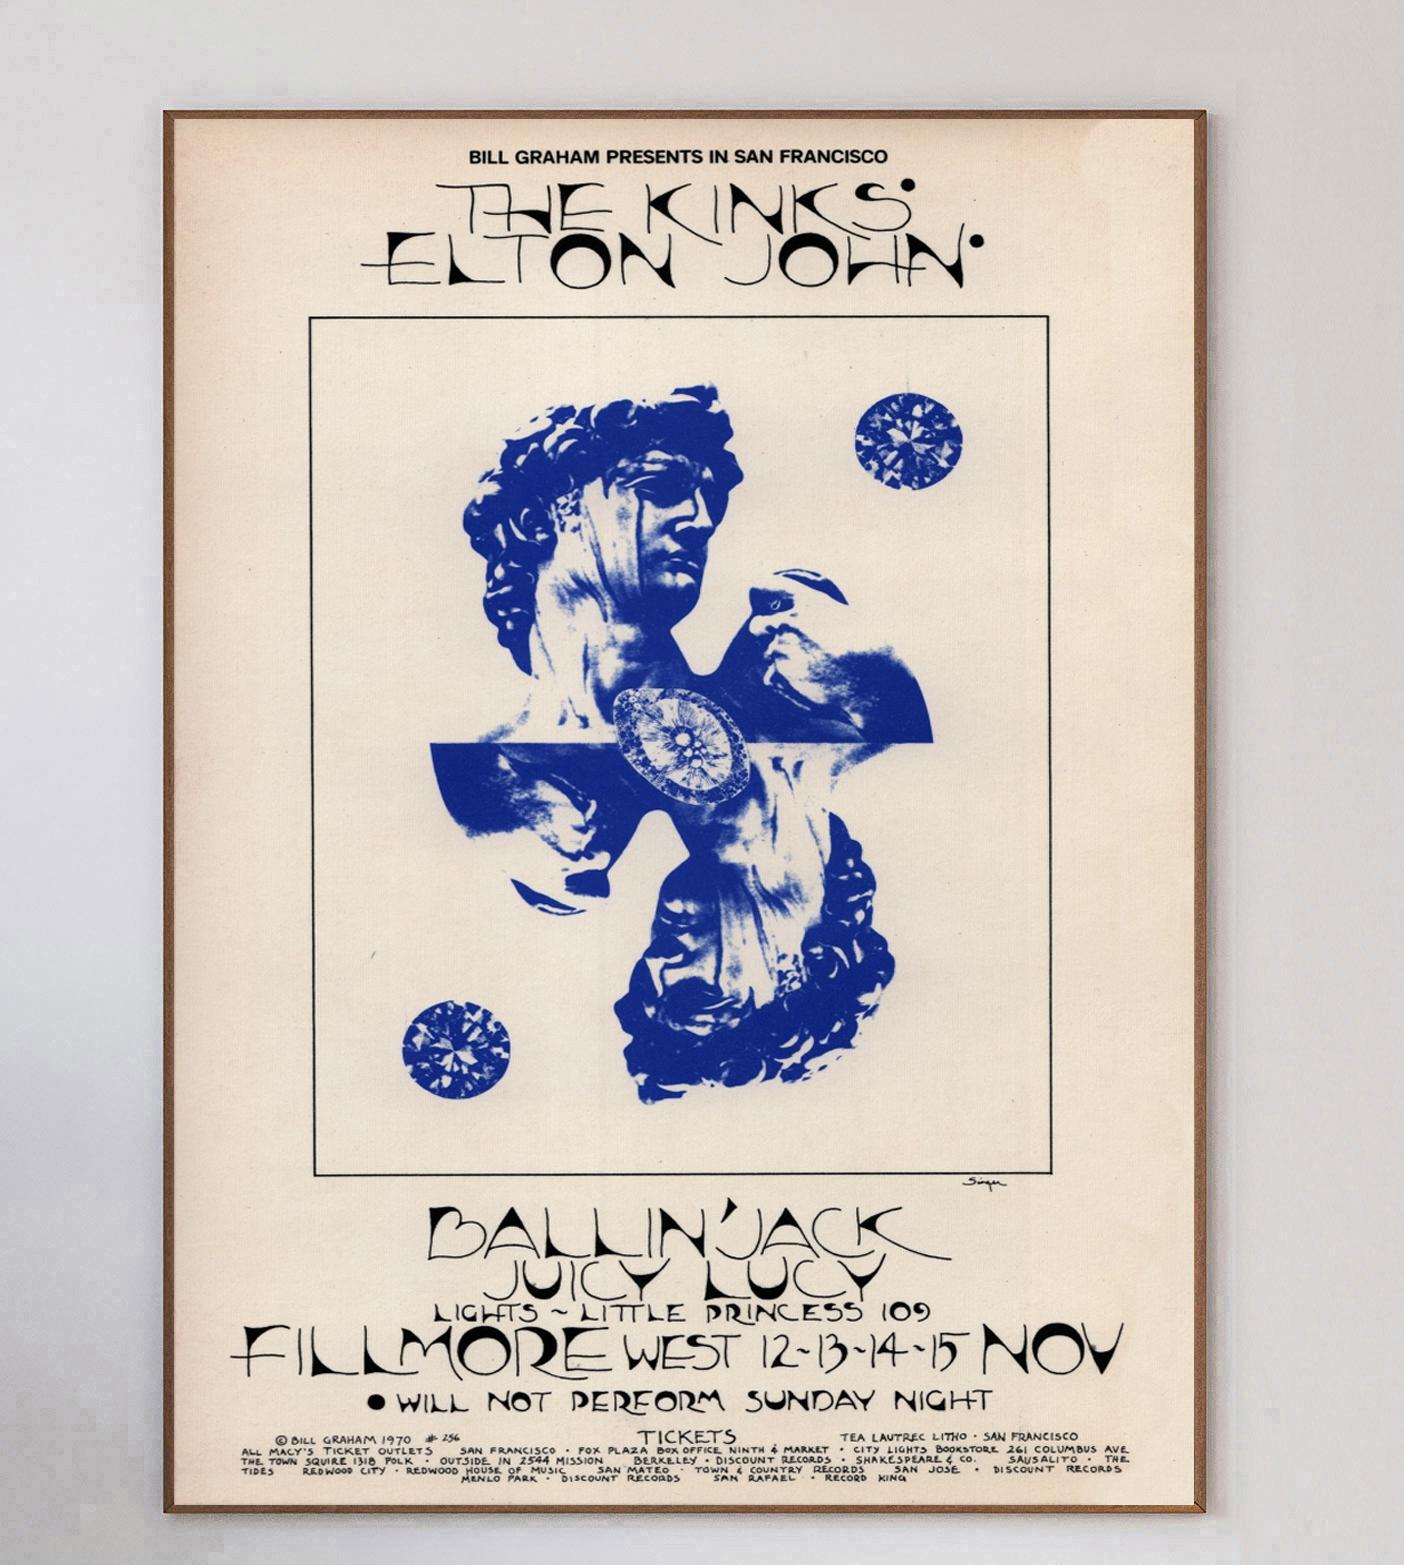 Conçue par l'artiste David Singer, cette magnifique affiche a été créée en 1970 pour promouvoir un concert des Kinks et d'Elton John au célèbre Fillmore West de San Francisco. Les événements organisés par Bill Graham comme celui-ci étaient bien